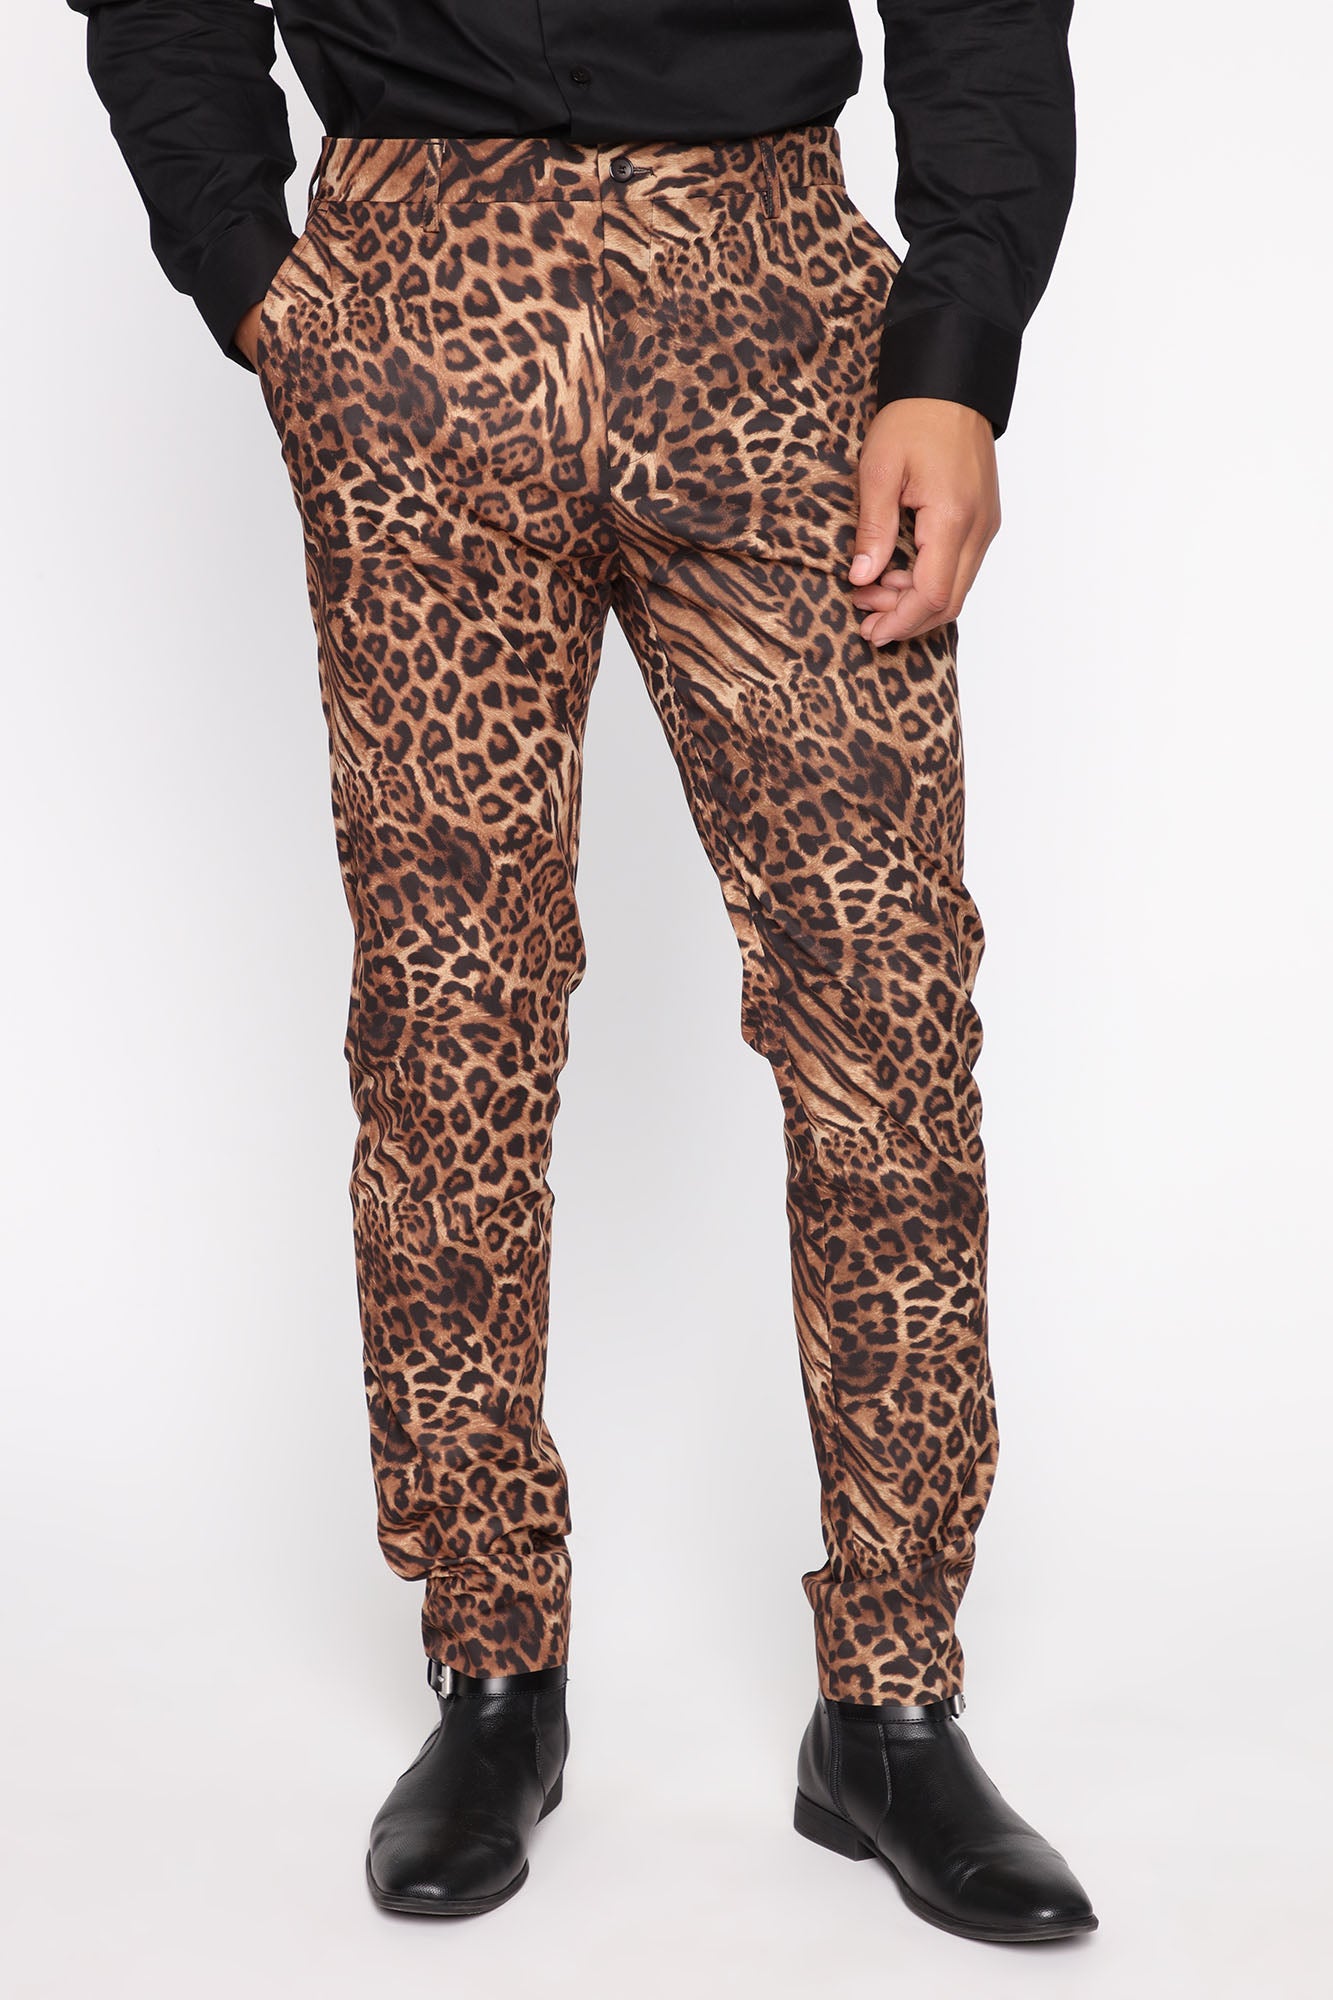 3 Ways to Wear Leopard Pants  Lauren Toews